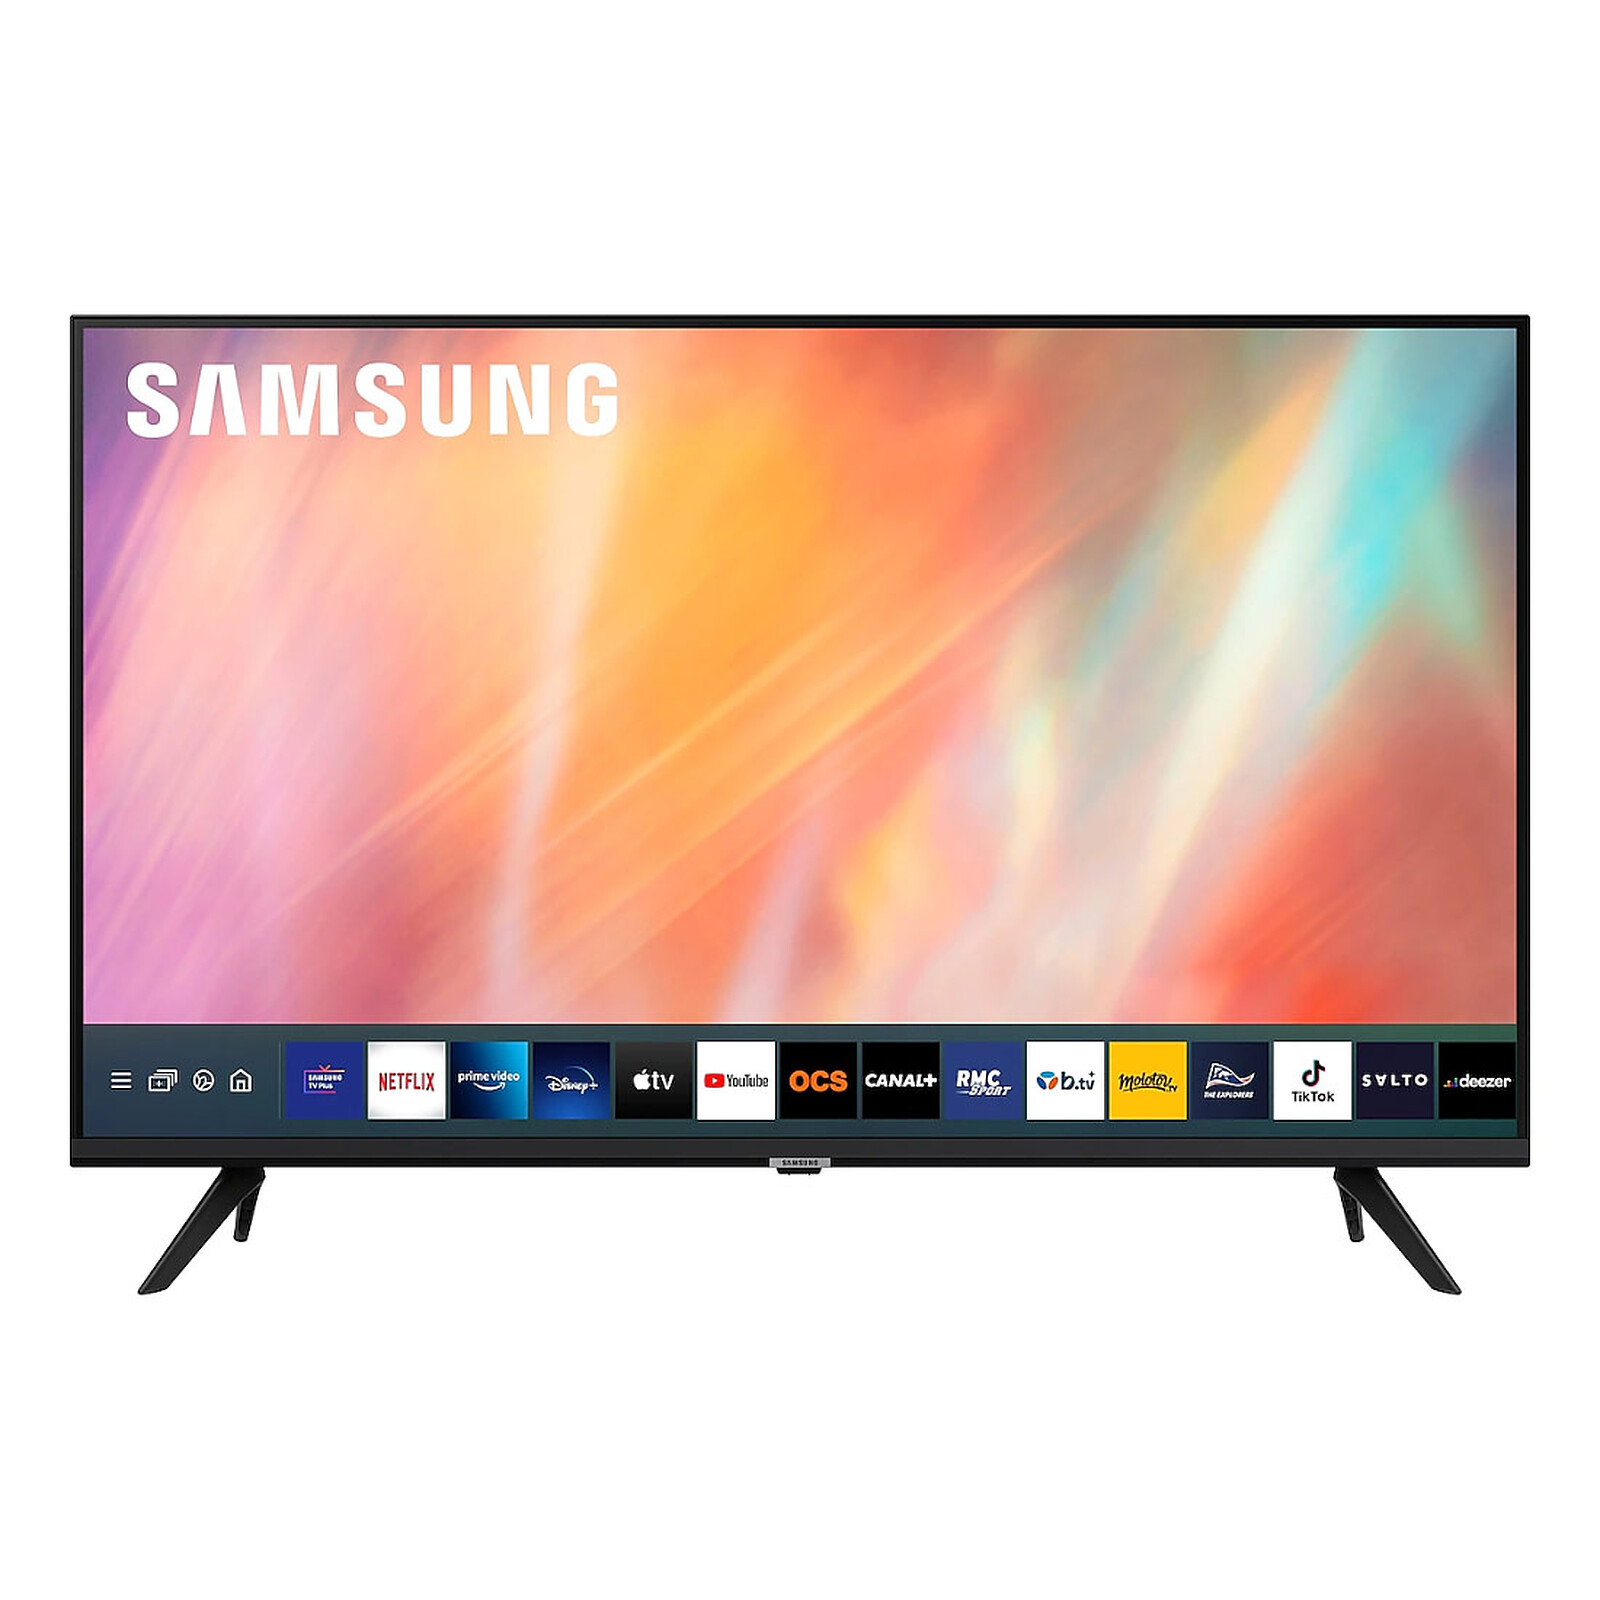 Pantalla Samsung 50 Pulgadas UHD 4K Smart TV a precio de socio